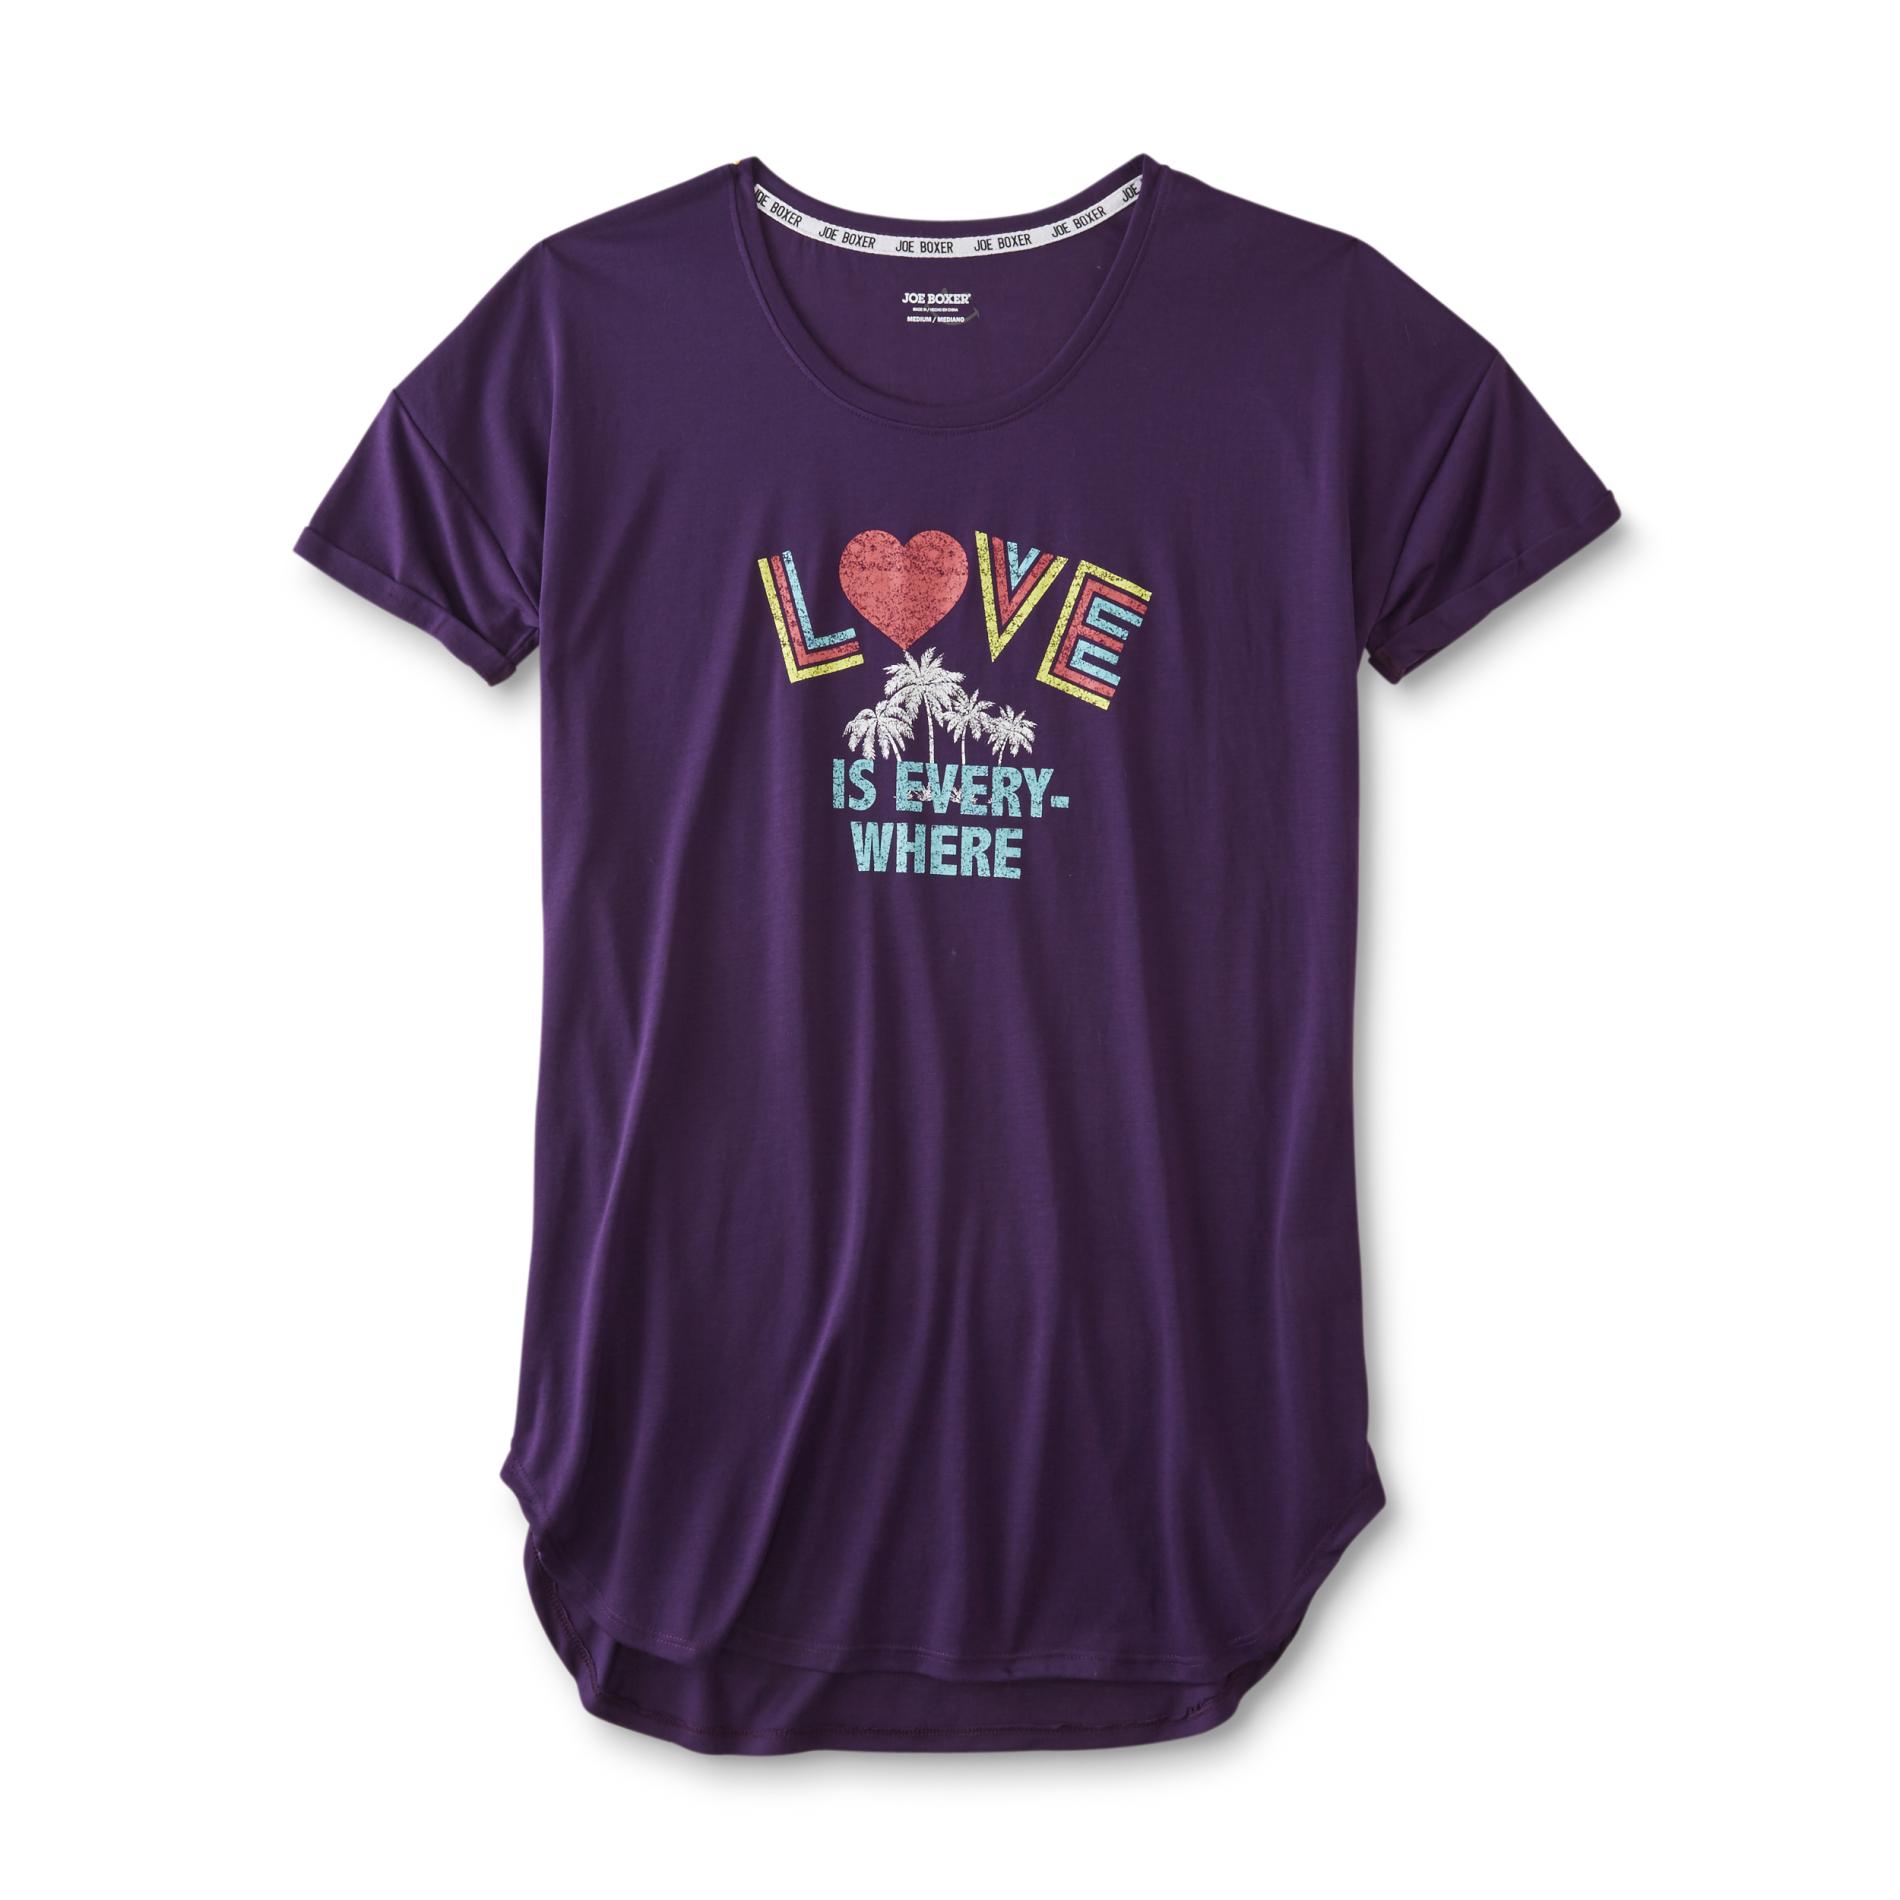 Joe Boxer Women's Sleep Shirt - Love is Everywhere